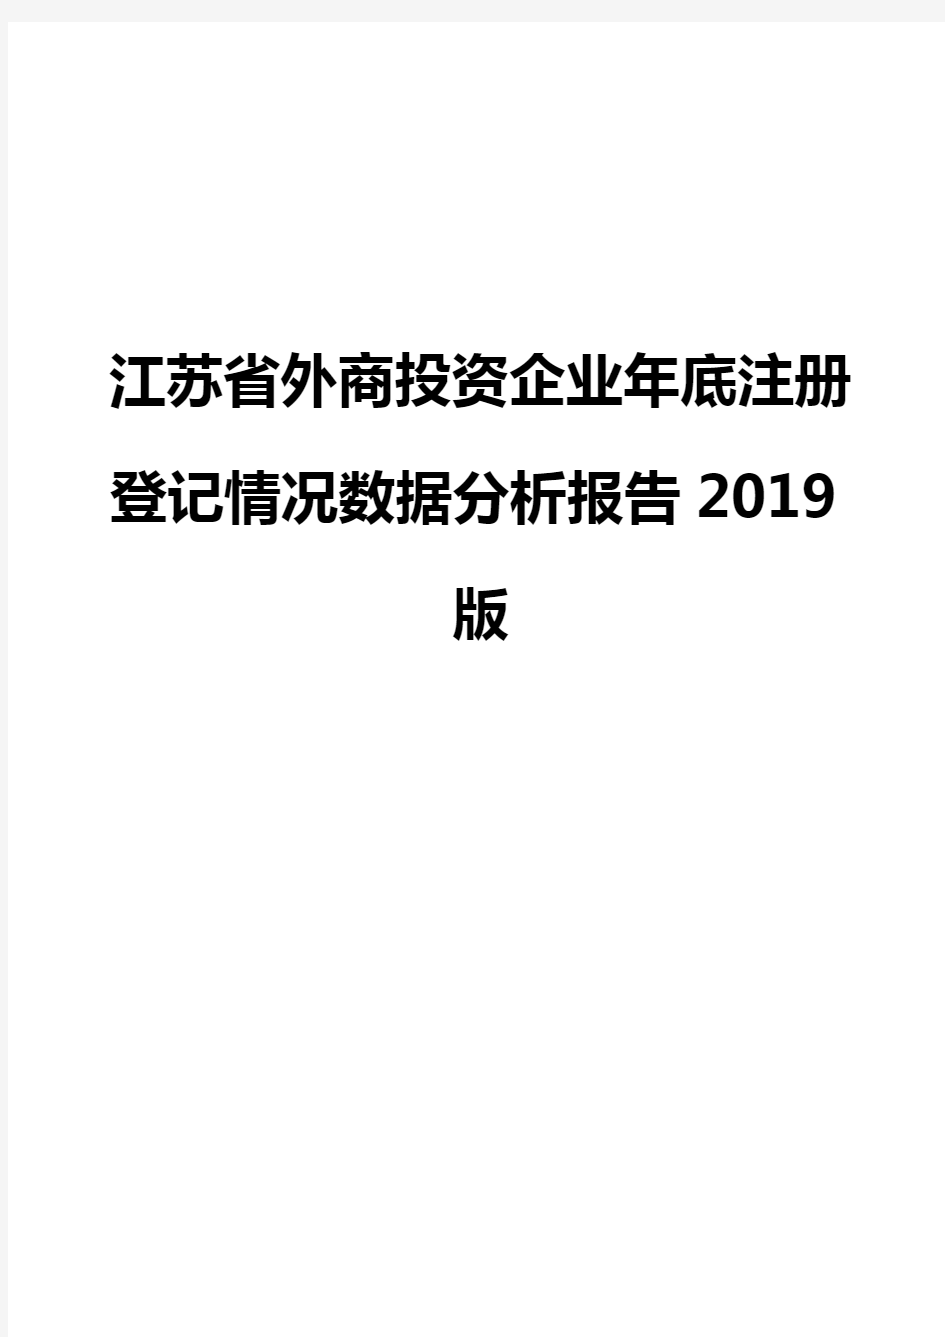 江苏省外商投资企业年底注册登记情况数据分析报告2019版